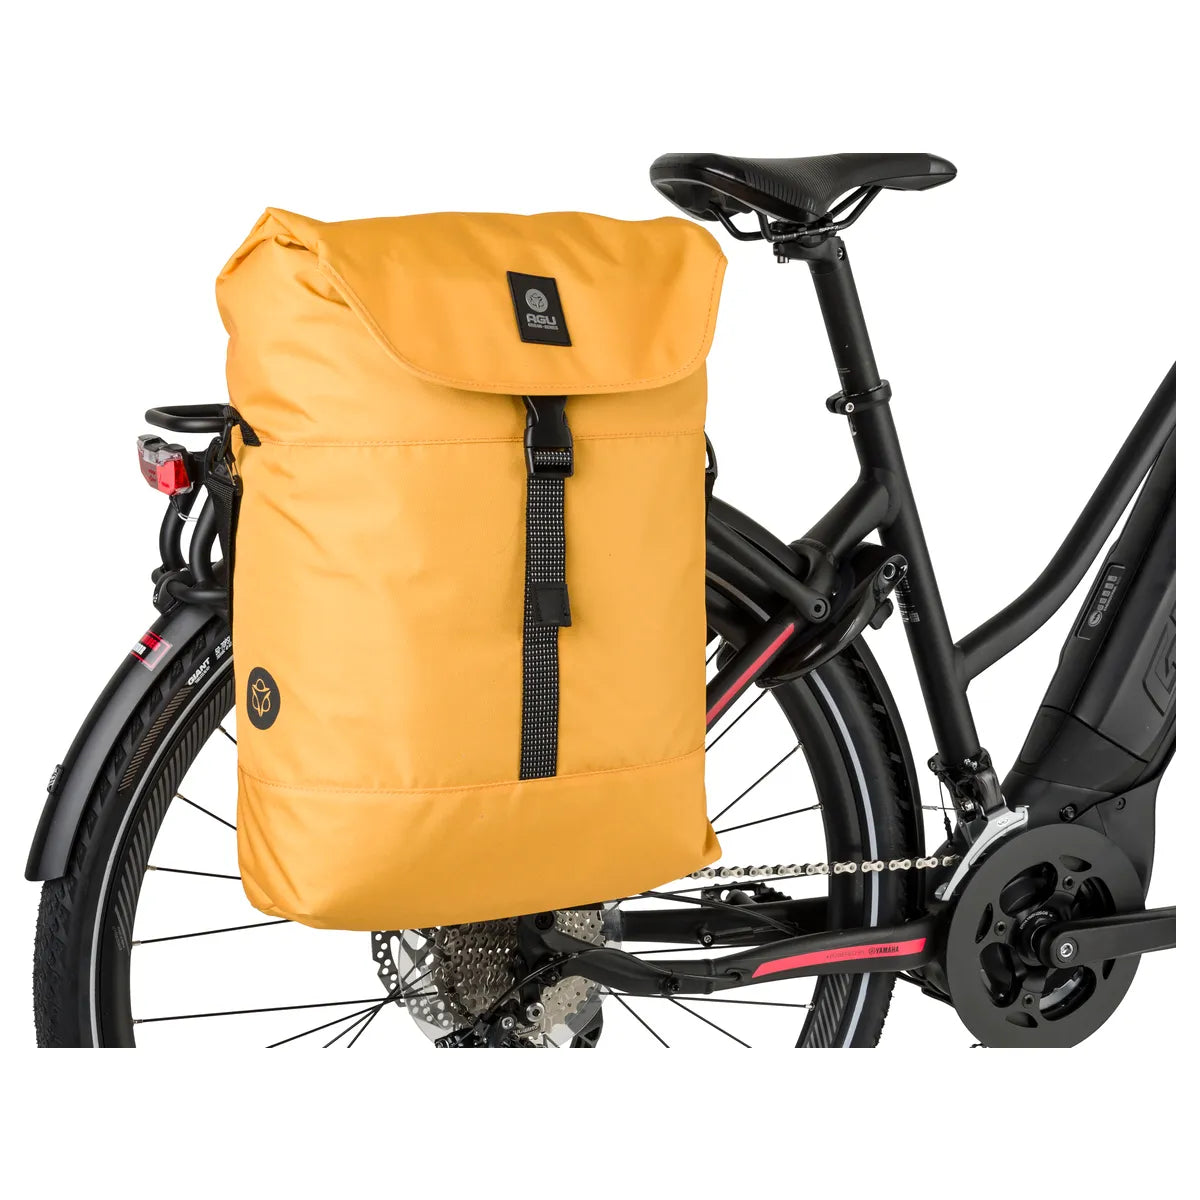 DWR Urban lightweight bike bag (17L) - Agu